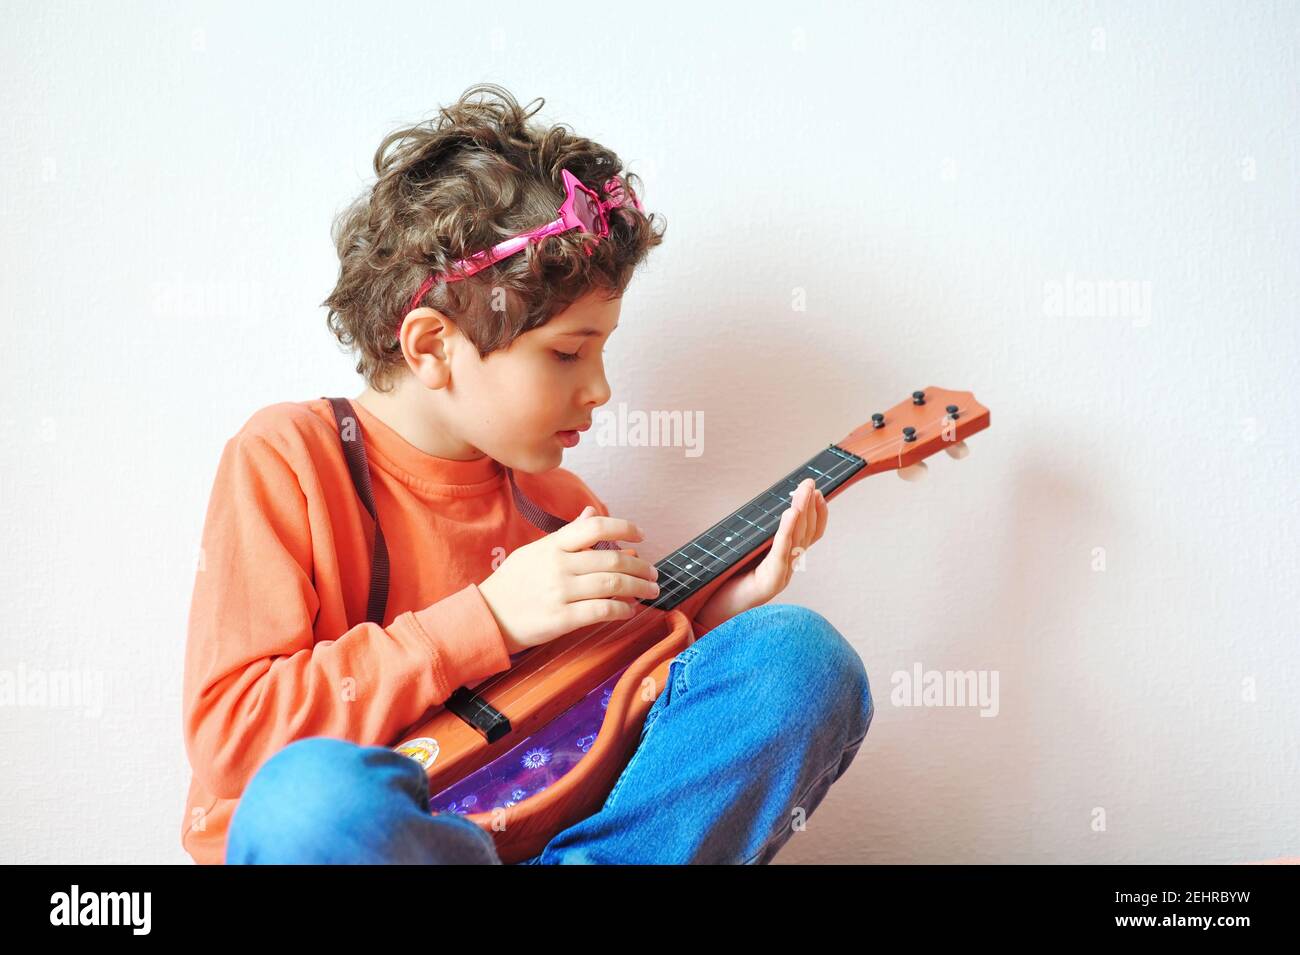 Drôle petit garçon avec des cheveux bouclés dans des verres en forme d'étoile rose joue la guitare jouet. Une star du rock joyeuse, hippie Banque D'Images